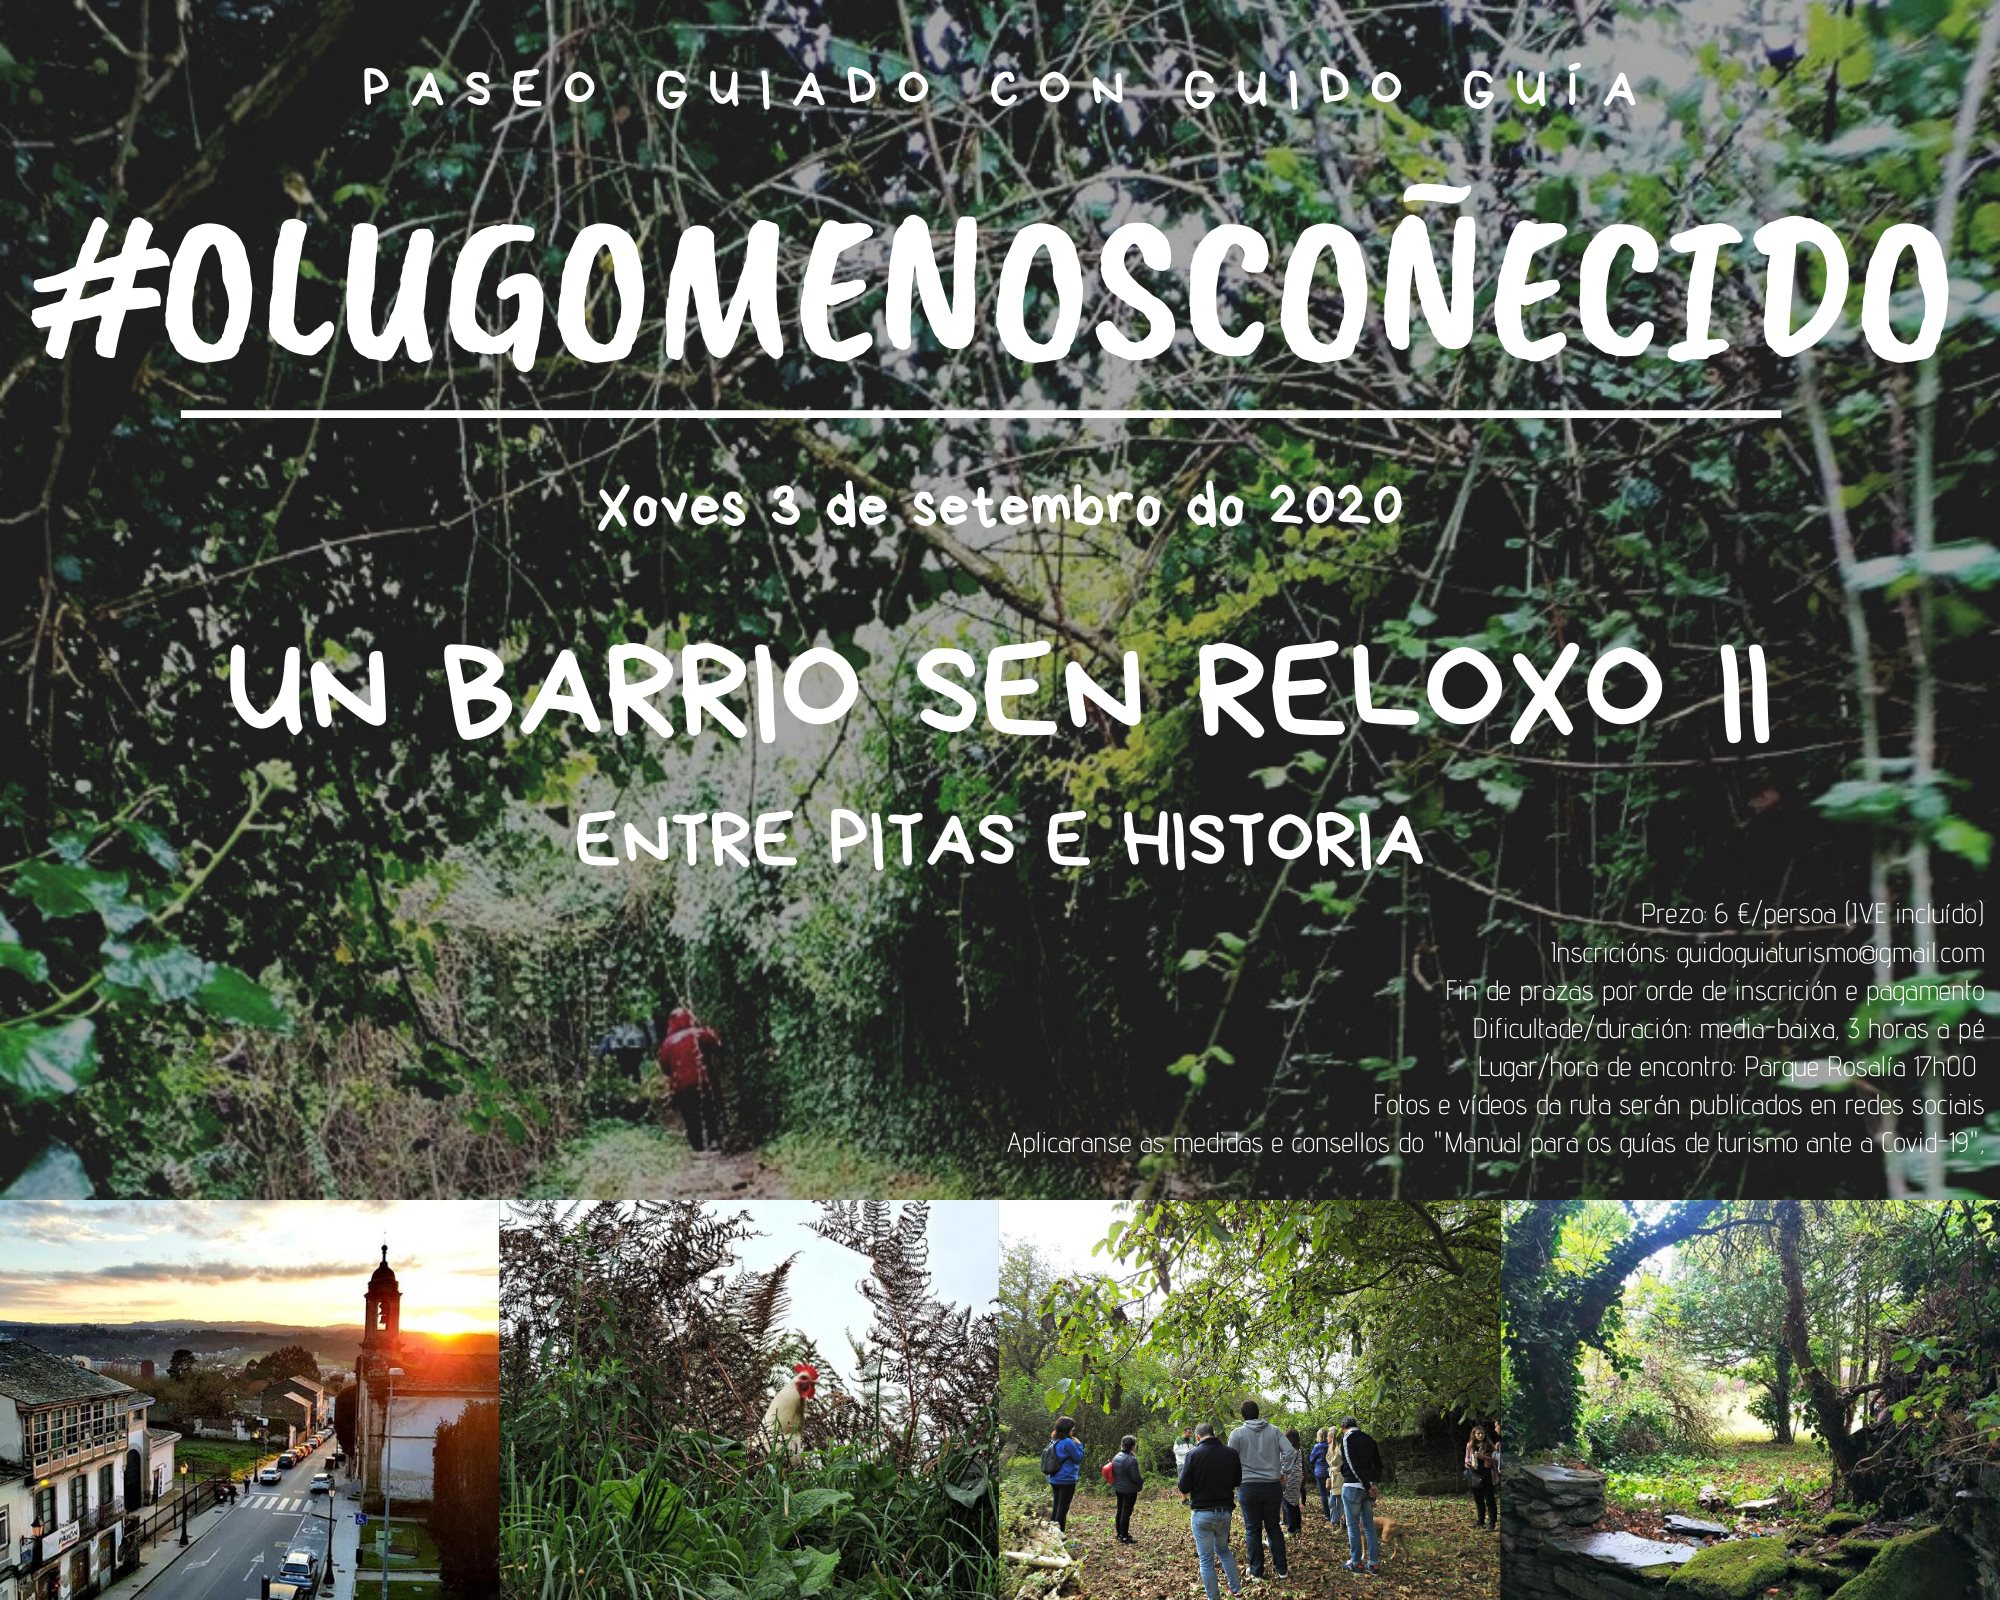 Paseo guiado polo Lugo menos coñecido #UnBarrioSenReloxo II